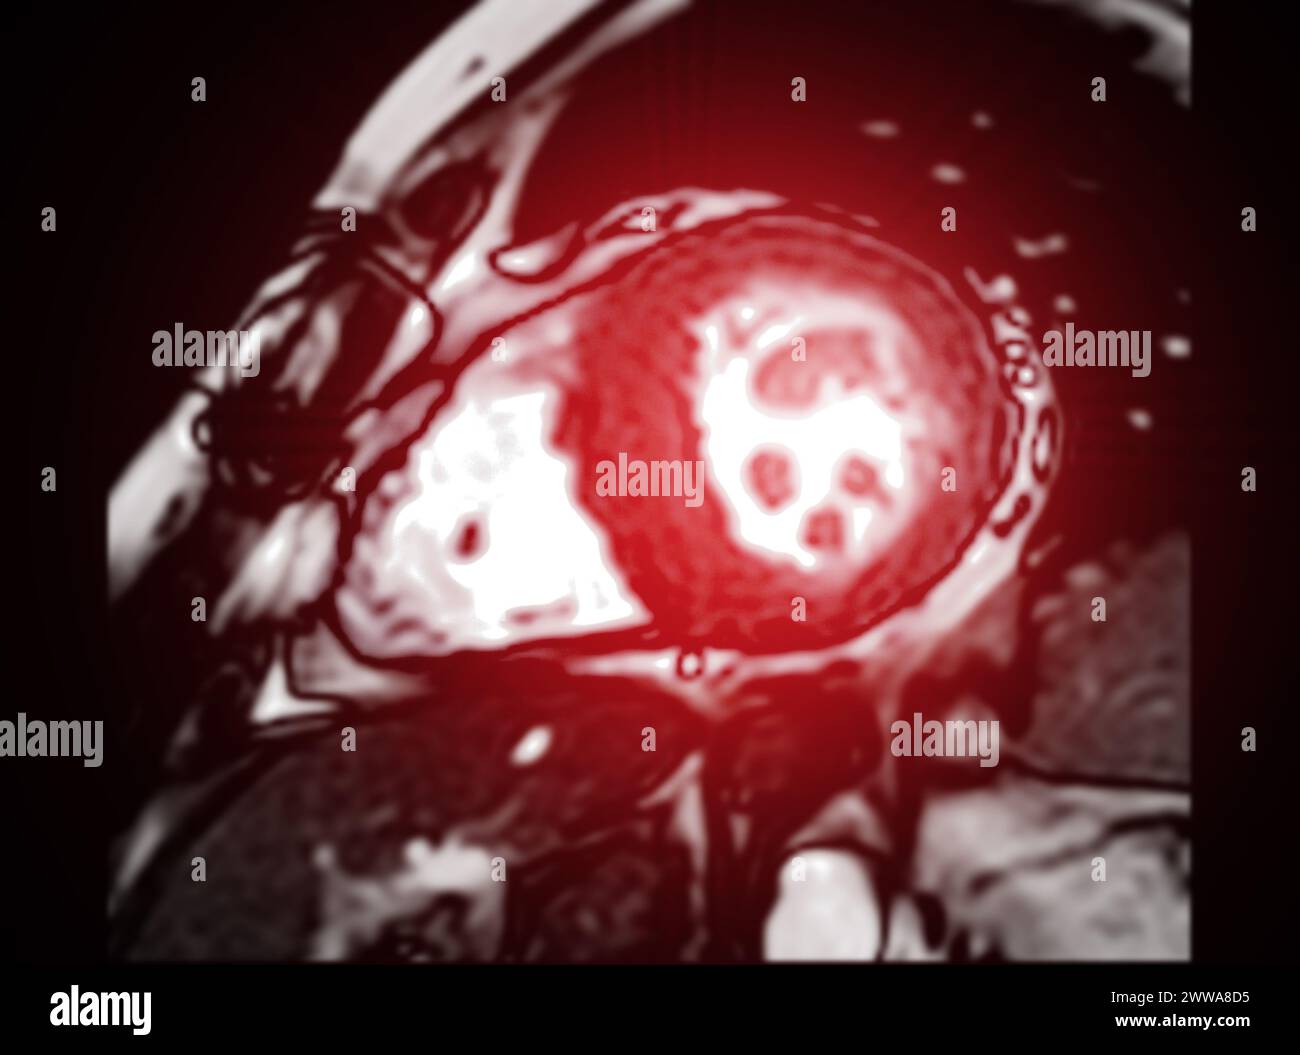 Die kardiale MRT bewertet die Herzgesundheit und liefert detaillierte Bilder für die Diagnose kardiovaskulärer Erkrankungen und die Planung der Behandlung Stockfoto